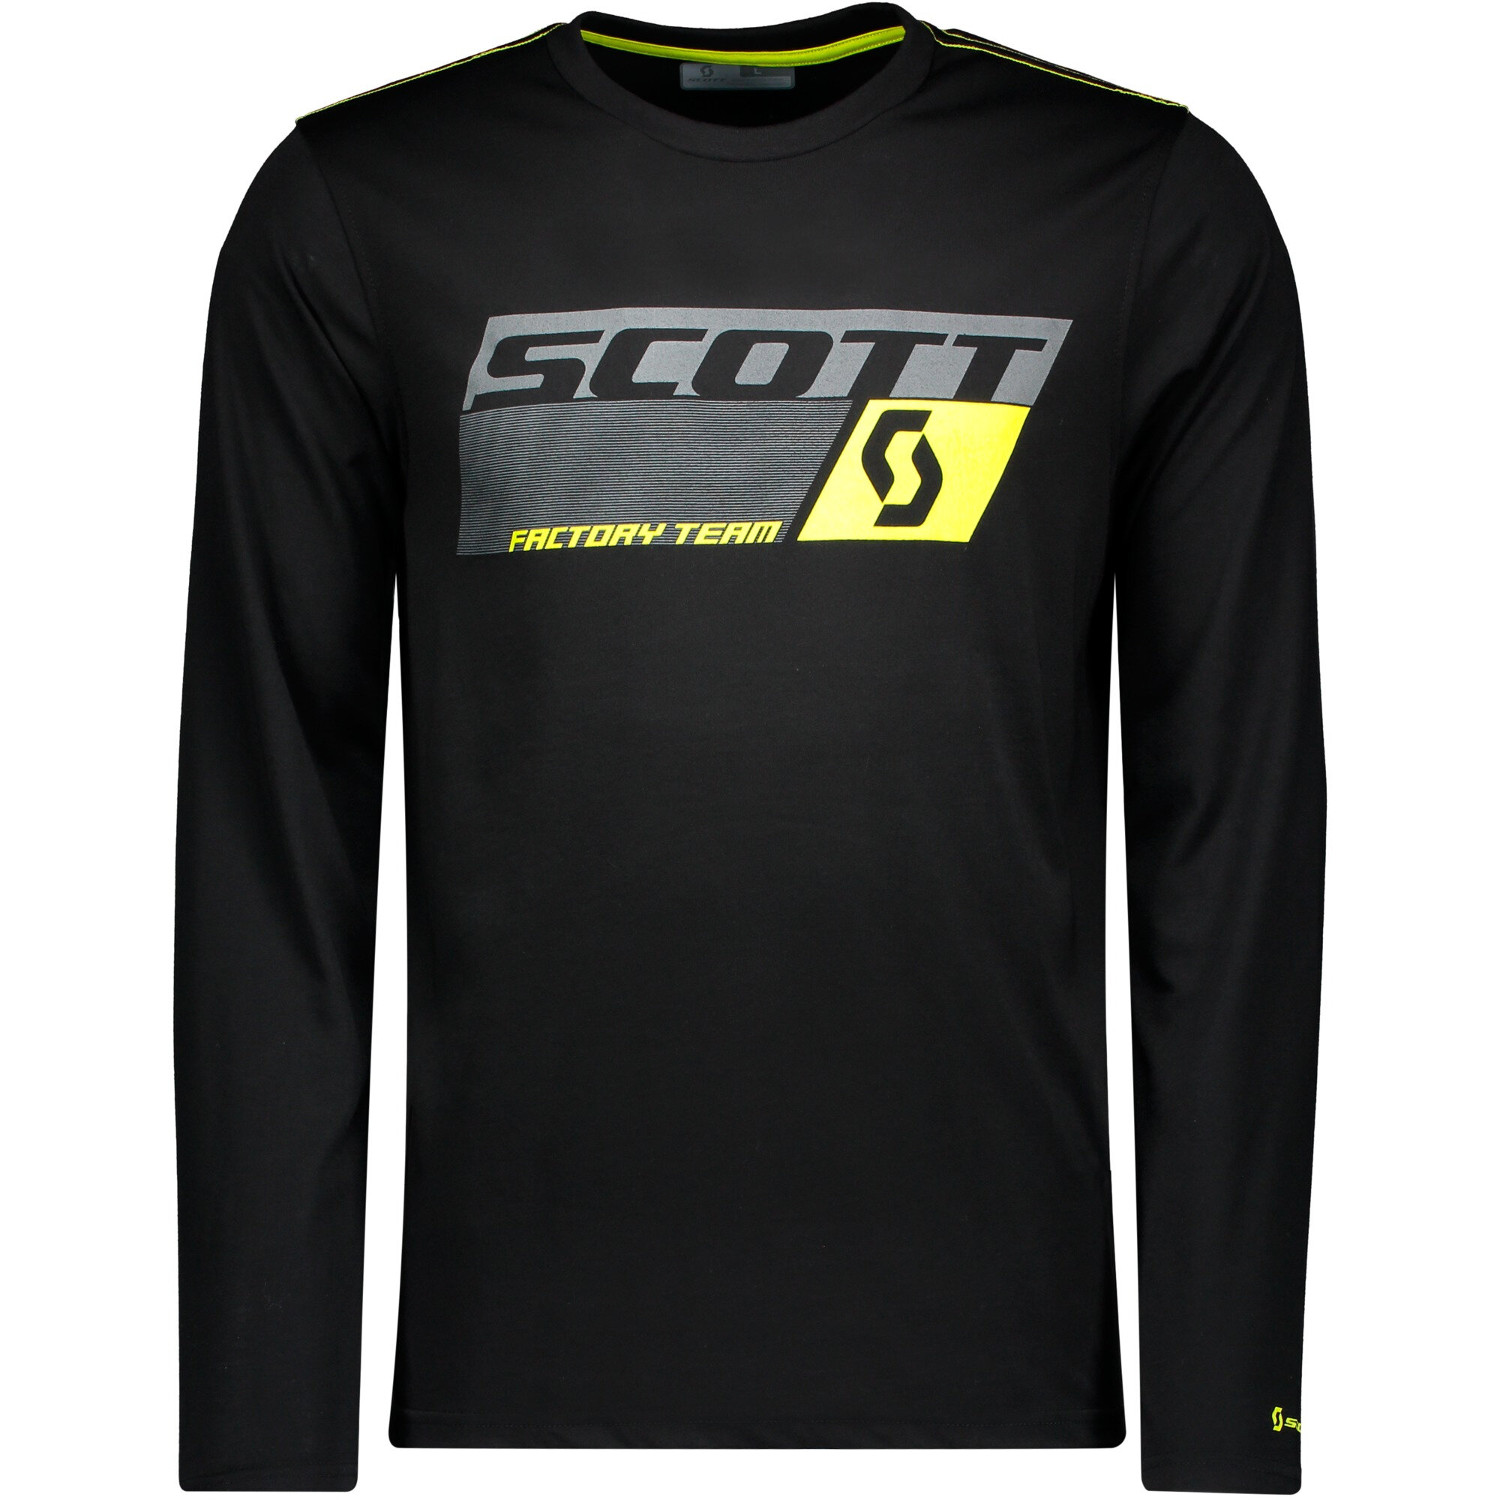 Scott T-Shirt Manches Longues Factory Team Dri Noir/Sulphur Jaune